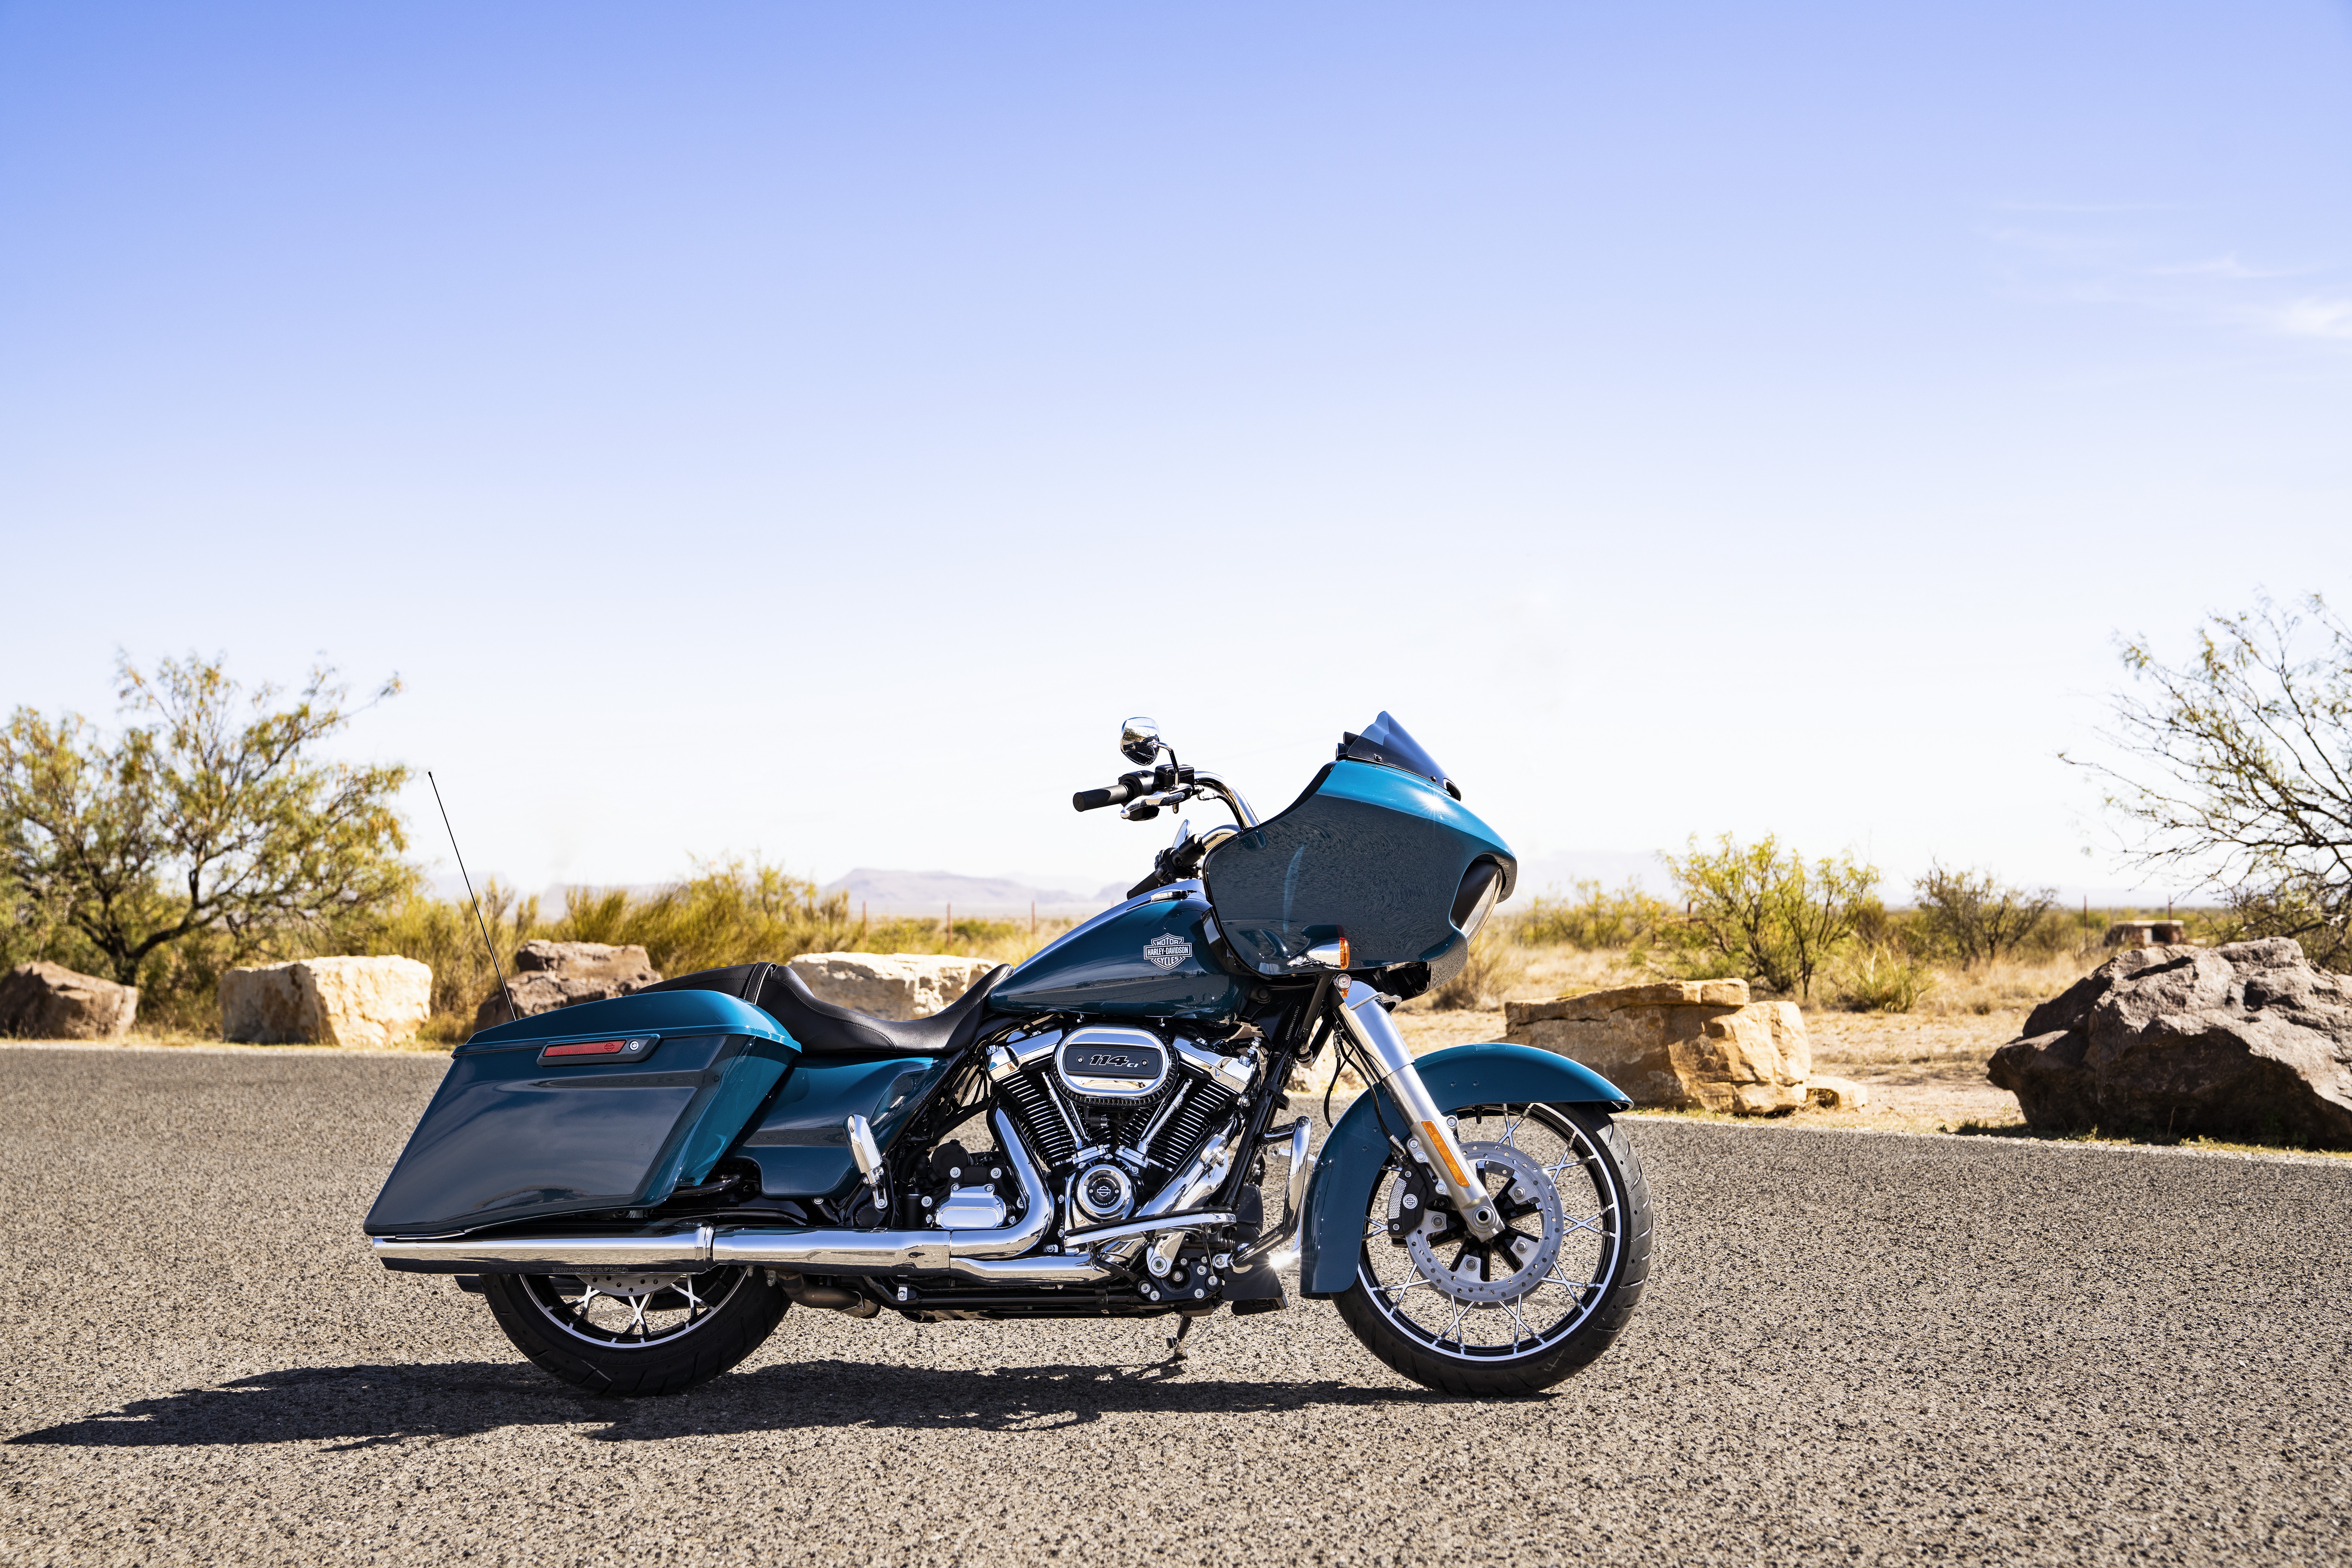 Daftar Harga Harley Davidson My2021 Dan Lokasi Dealership Nya